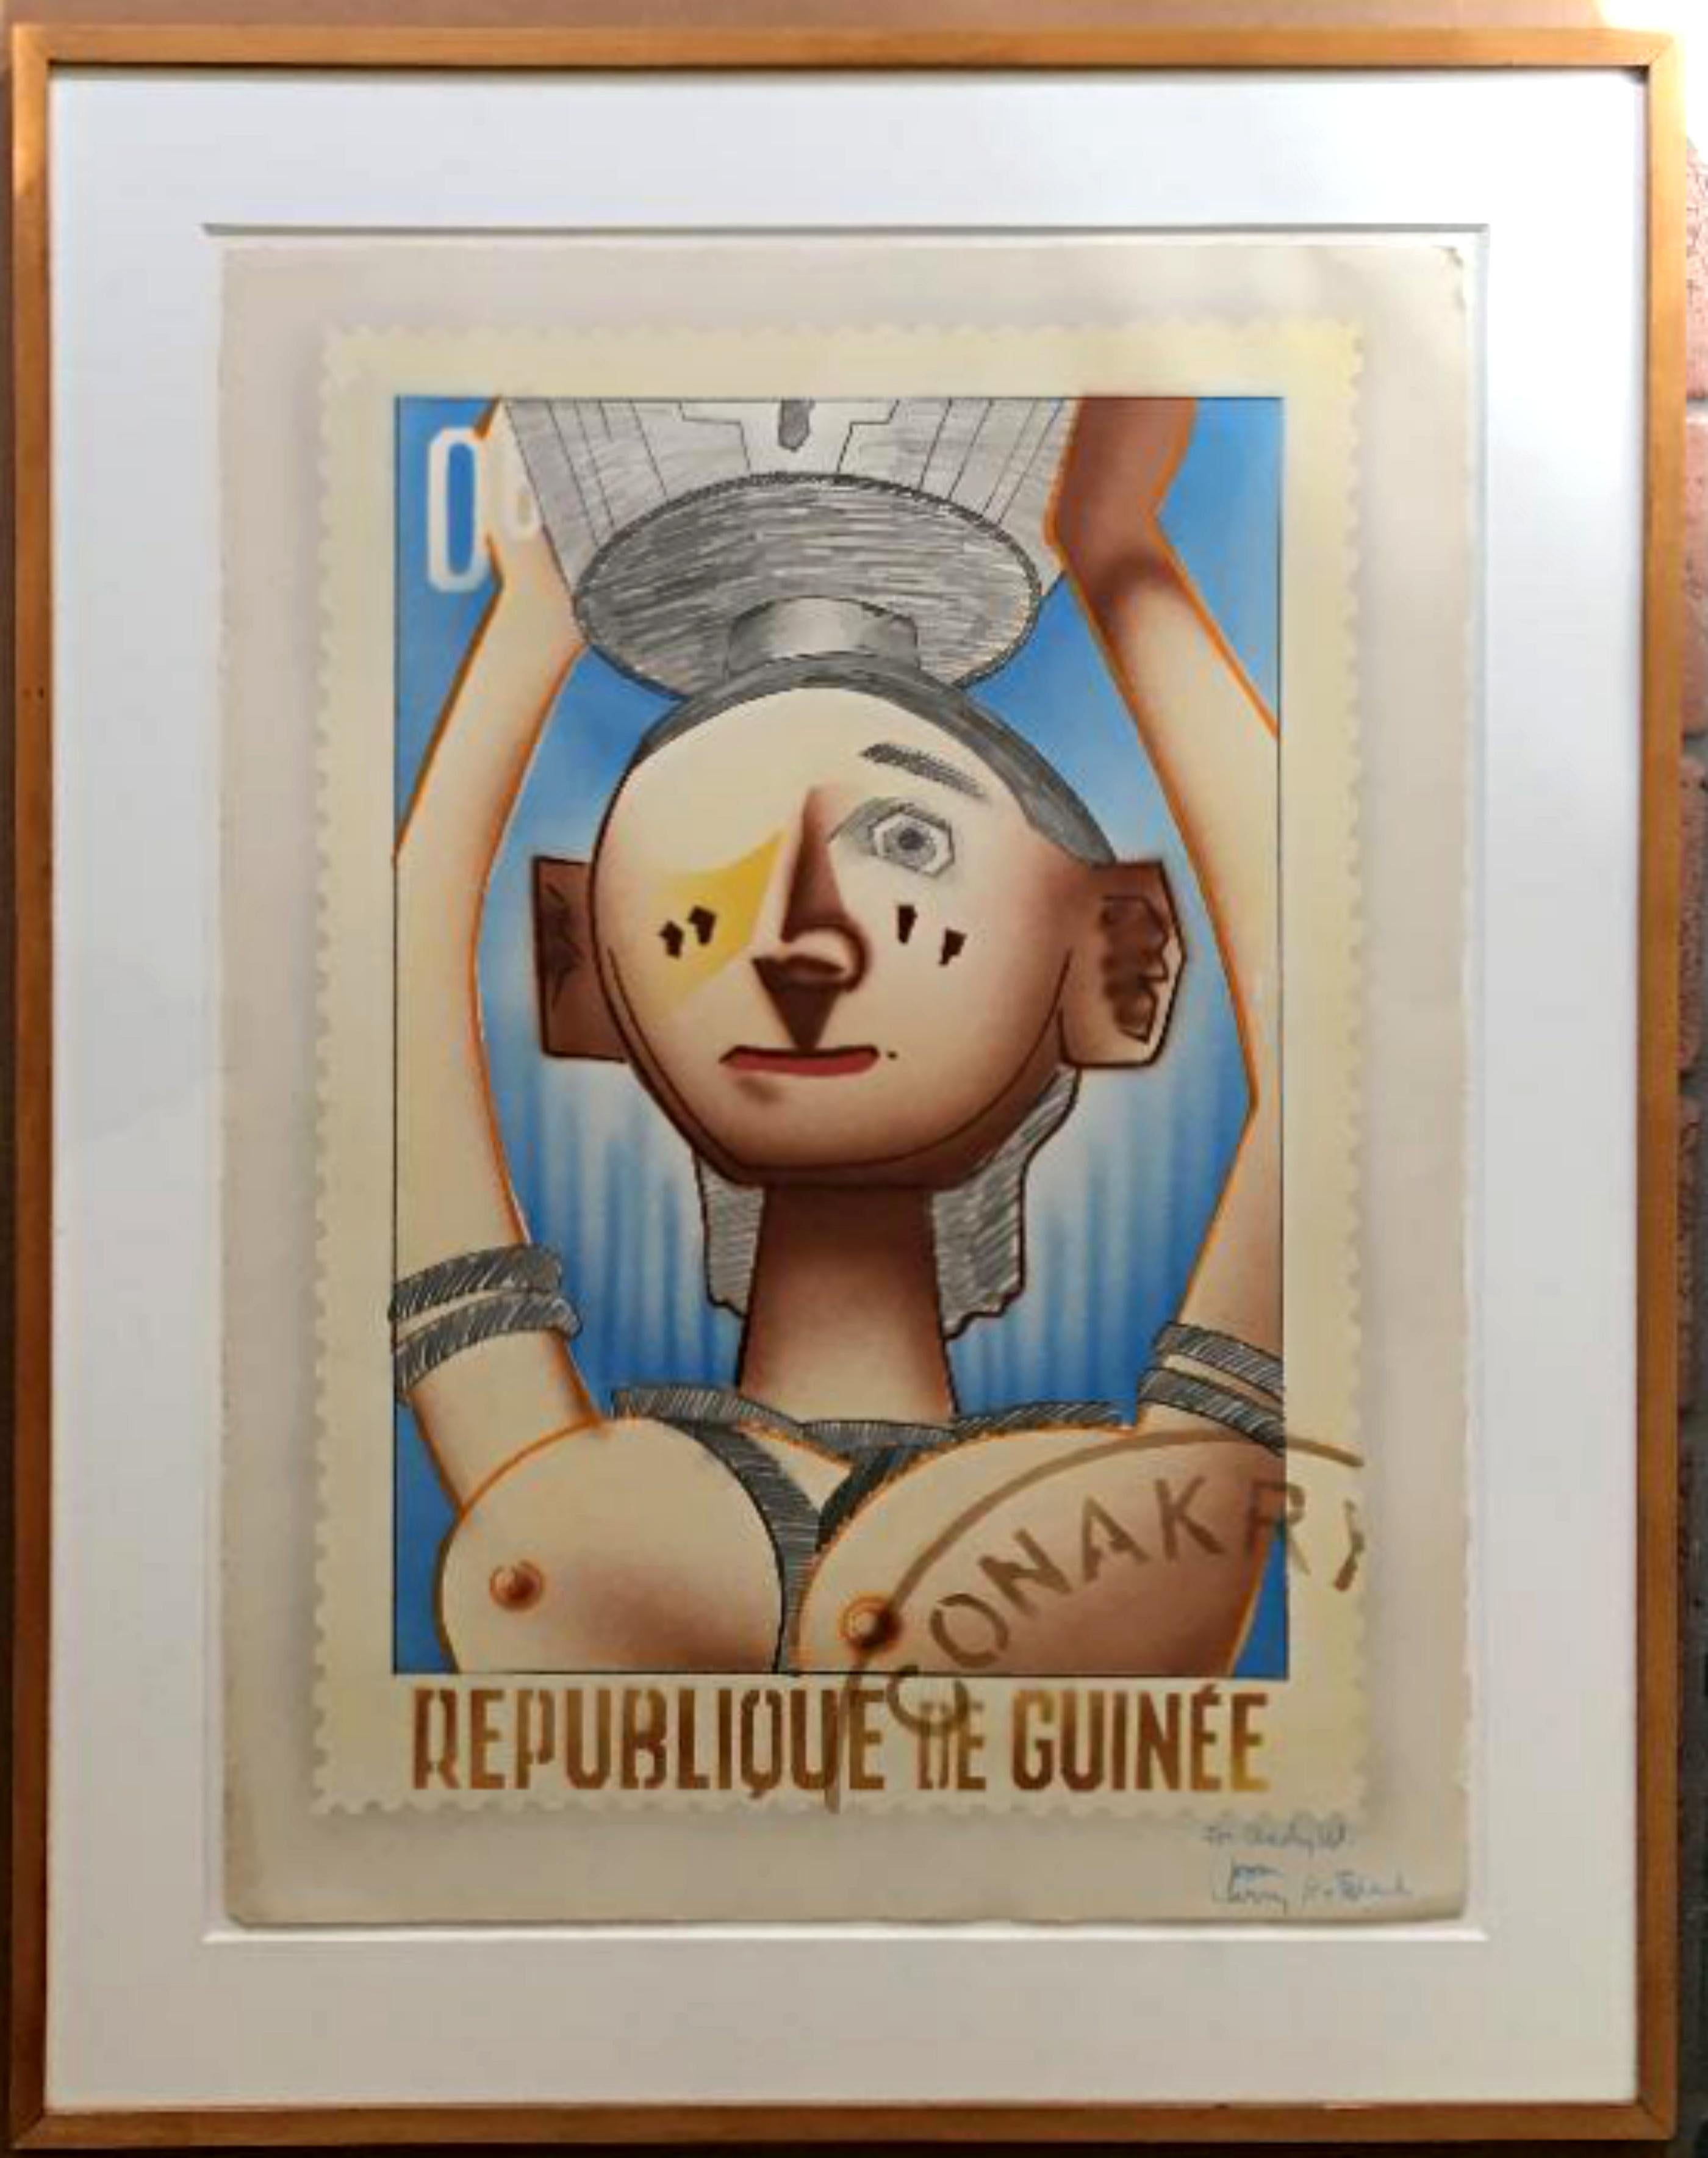 Republique De Guinee, für Andy Warhol, mit Tinte eingeschrieben für Andy Warhol (Pop-Art), Print, von Larry Rivers